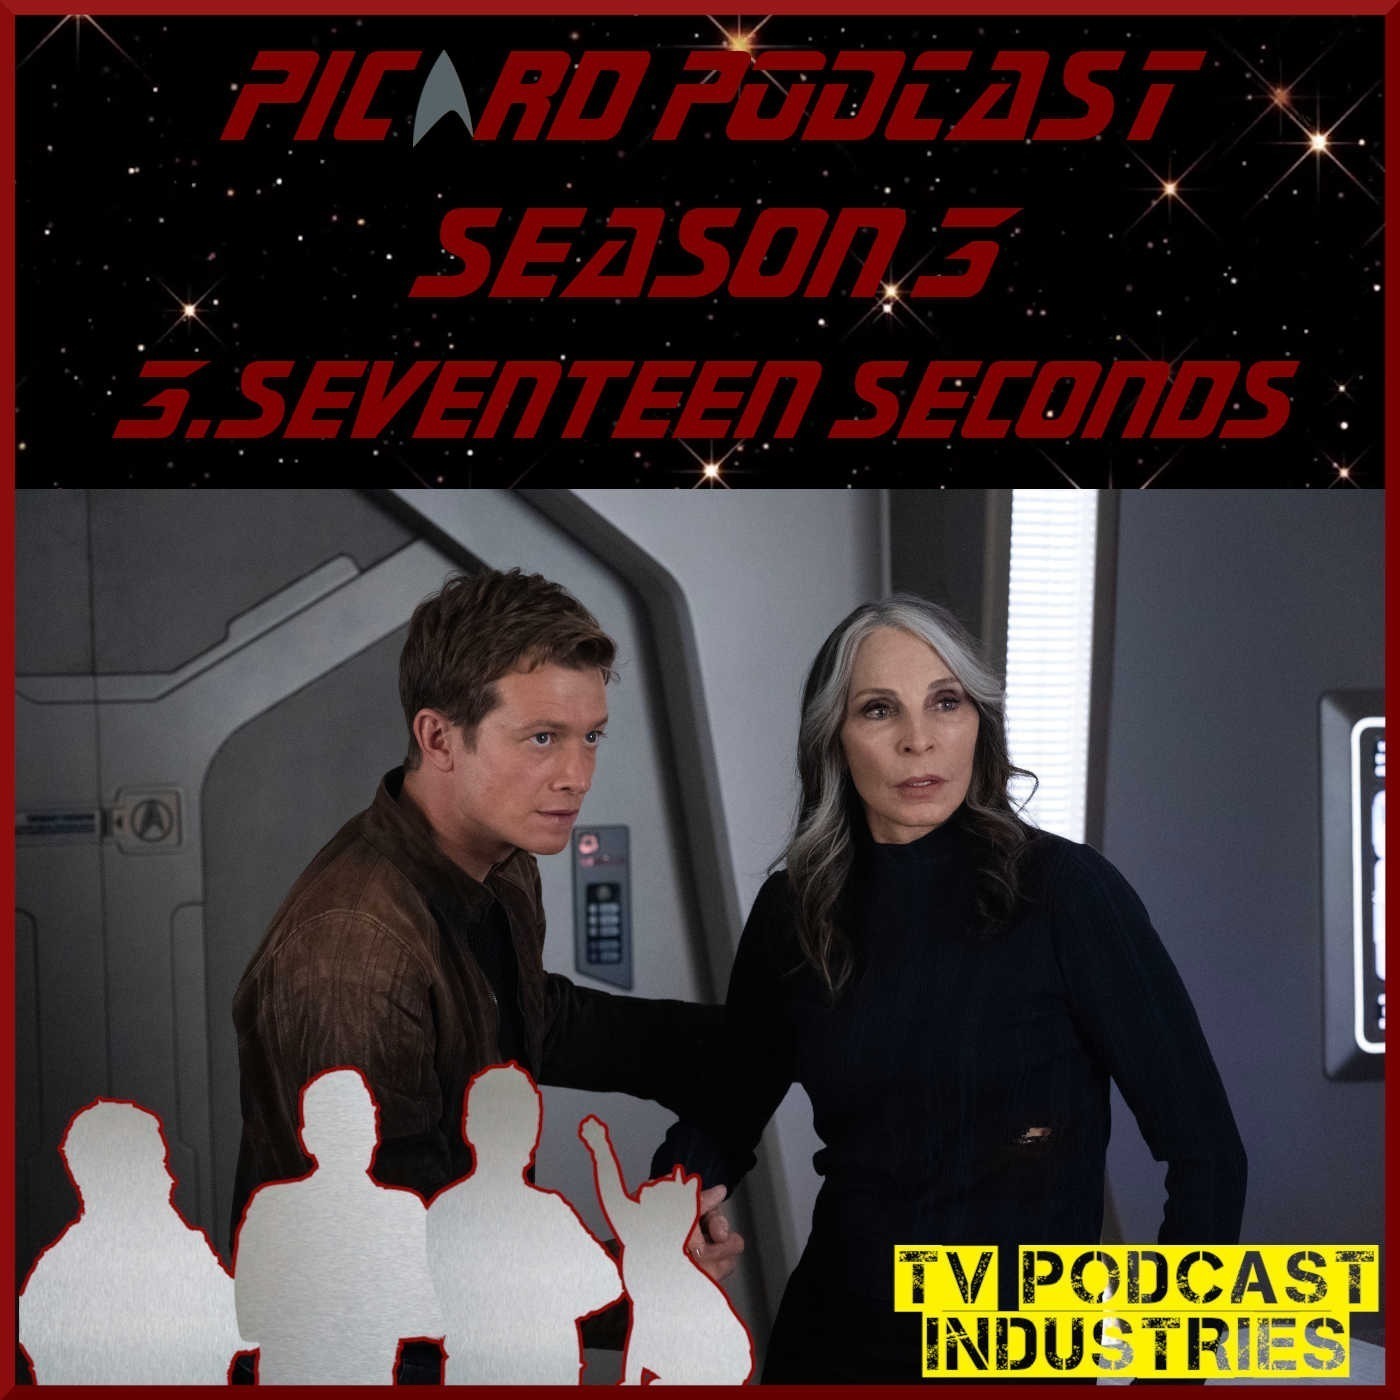 Star Trek Picard 303 ”Seventeen Seconds” review